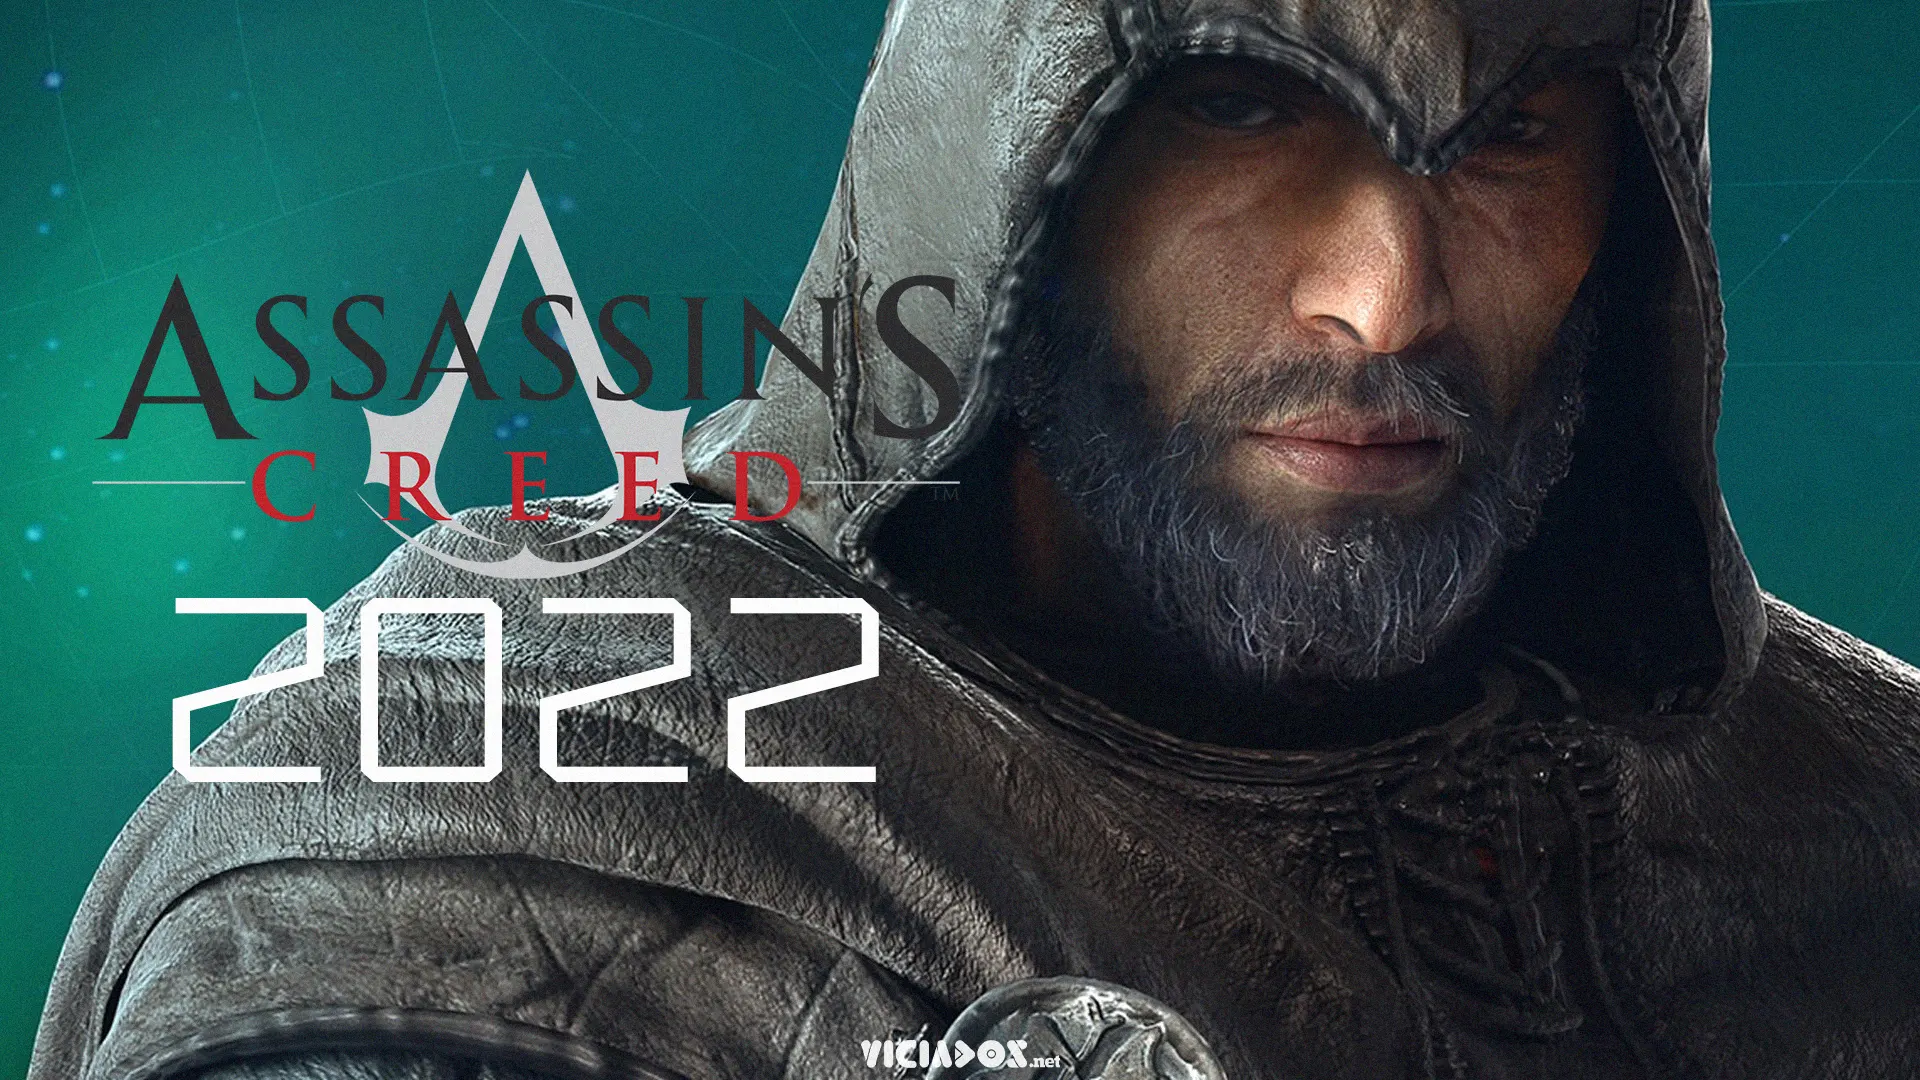 Assassin's Creed 2022 | Saiba tudo sobre o novo jogo da Ubisoft 2022 Viciados